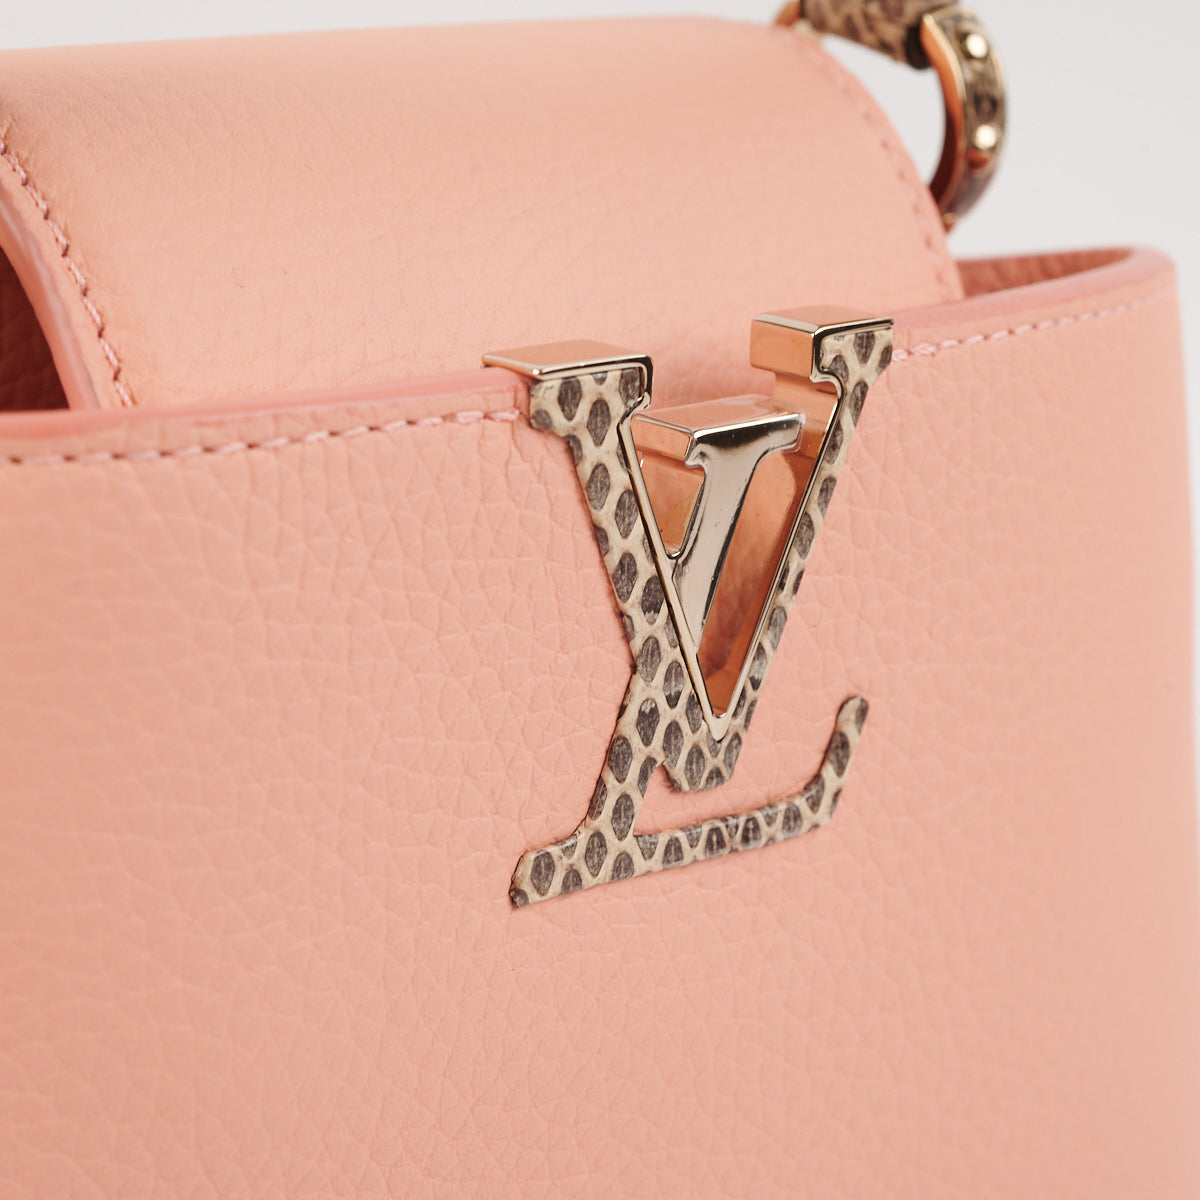 Louis Vuitton Capucines Mini Peach Lizard Handle - THE PURSE AFFAIR